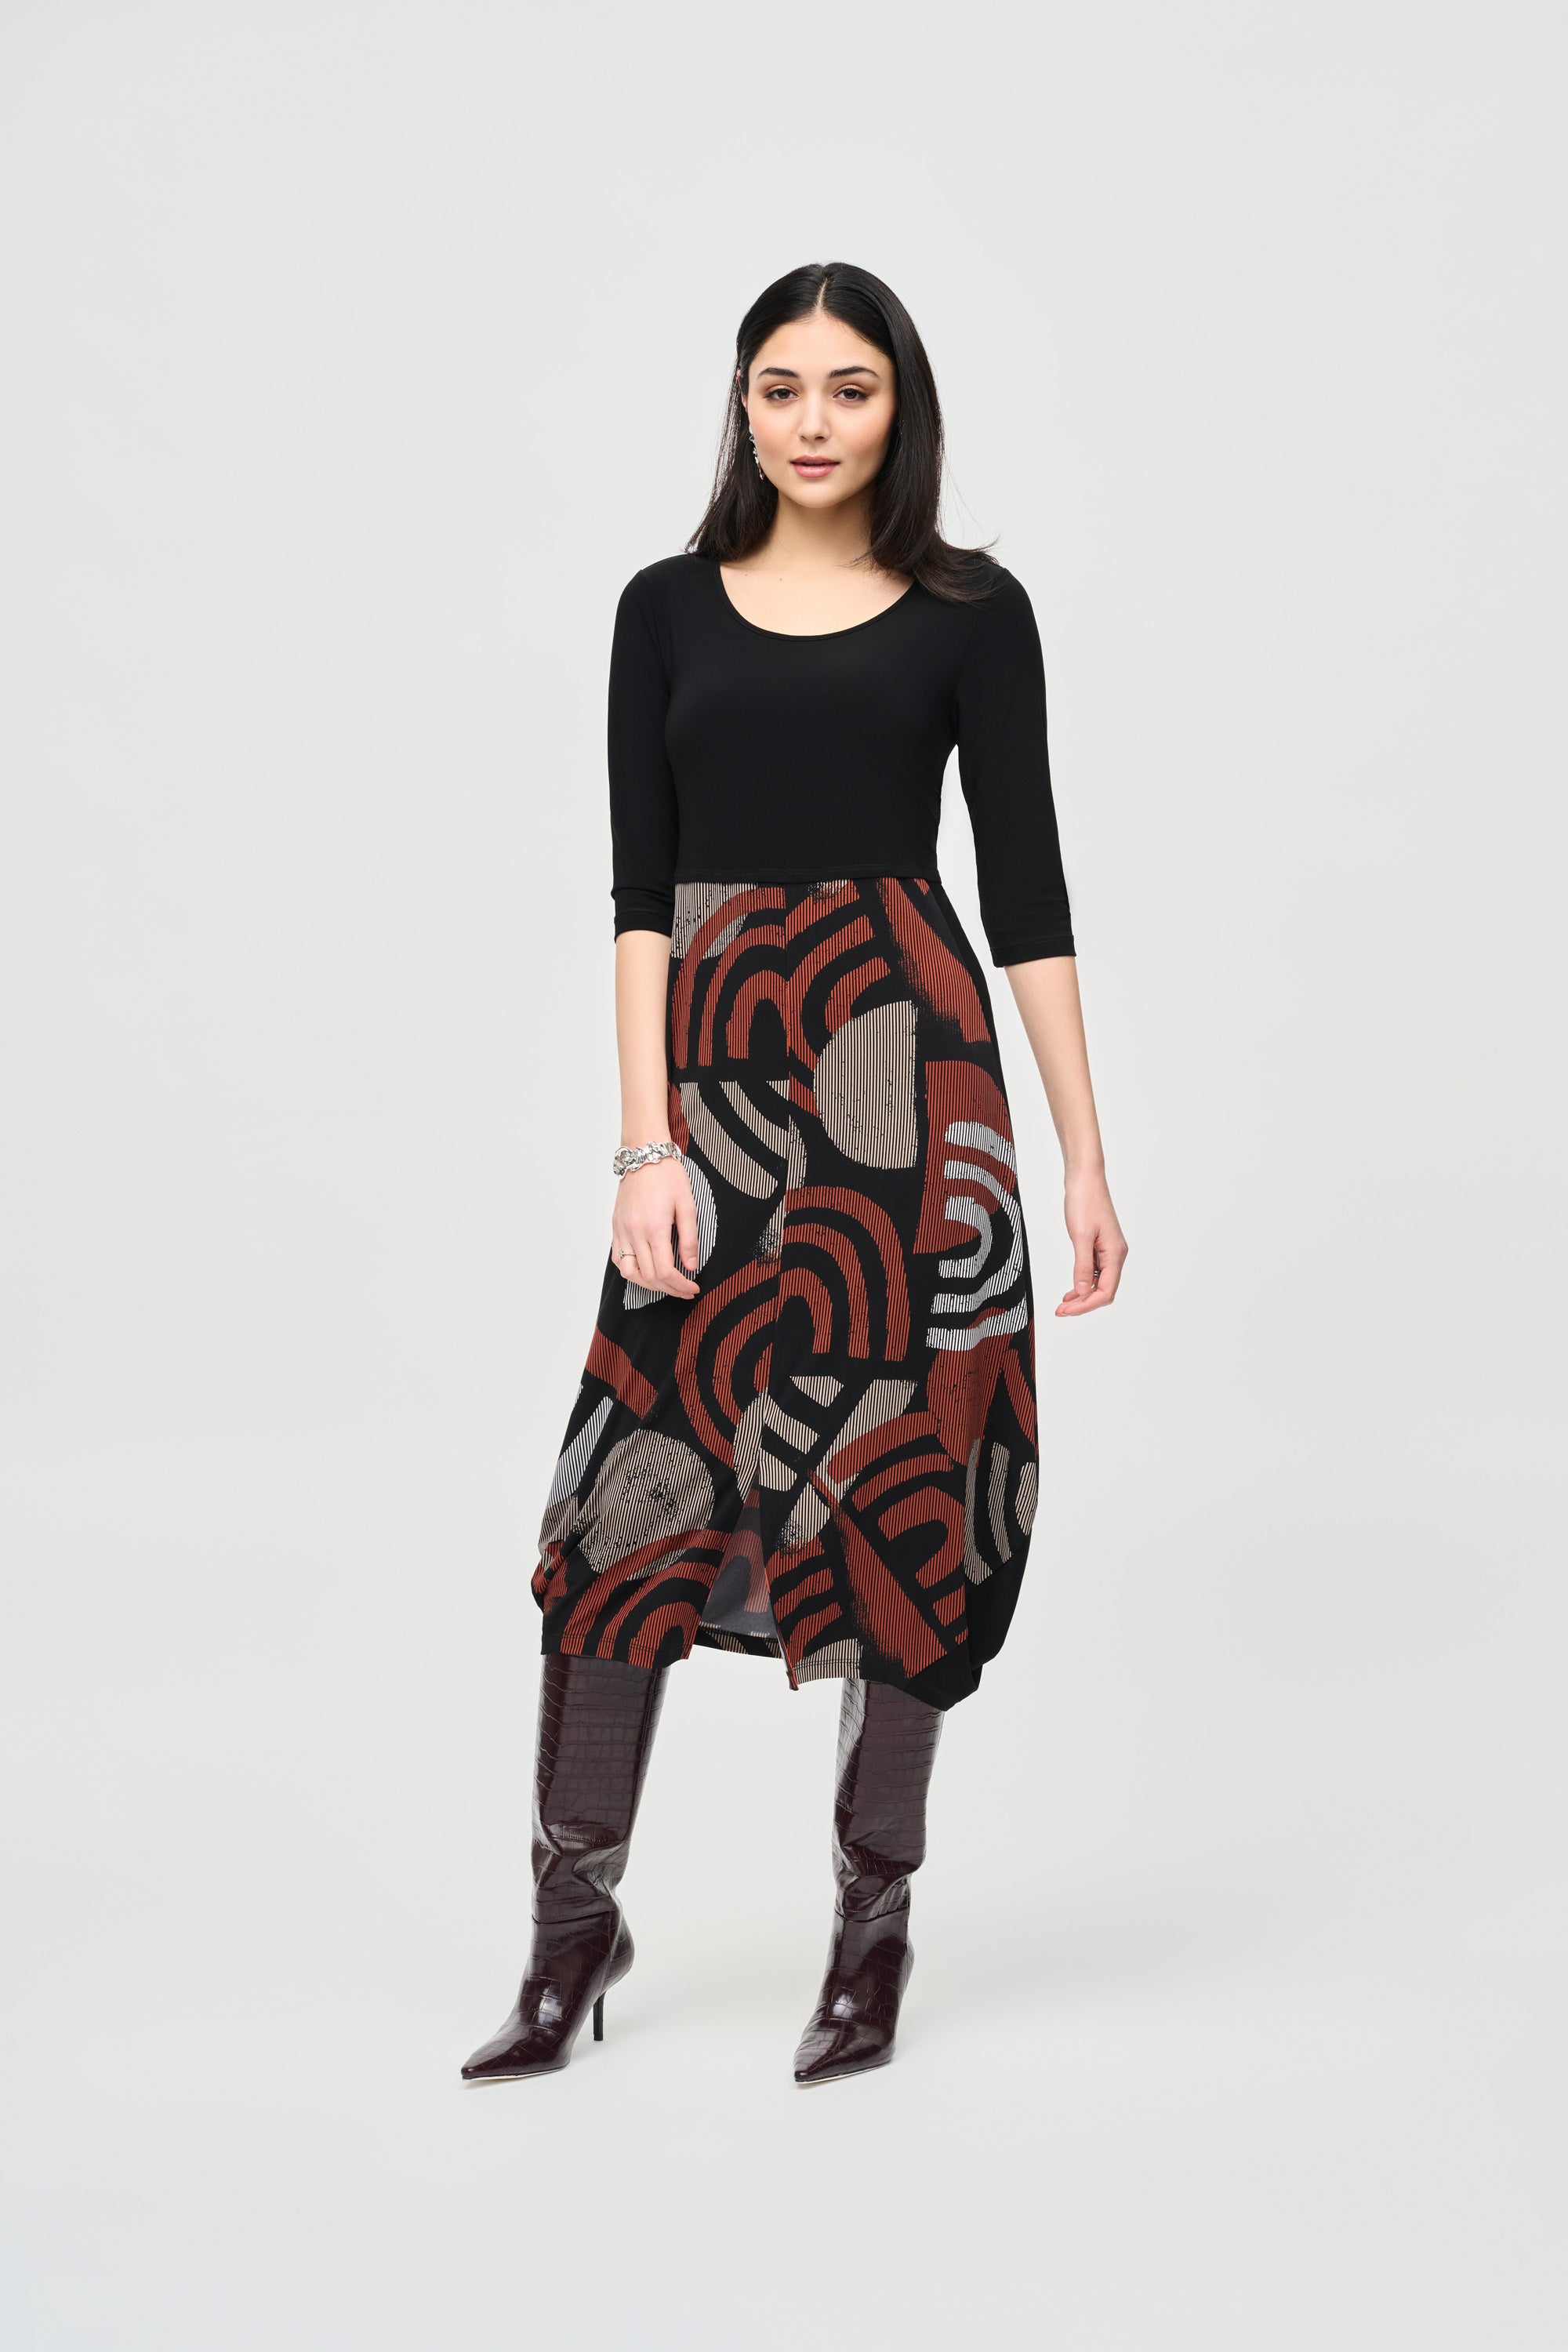 Joseph Ribkoff Geometric Print Cocoon Dress 243234 - Black/Multi